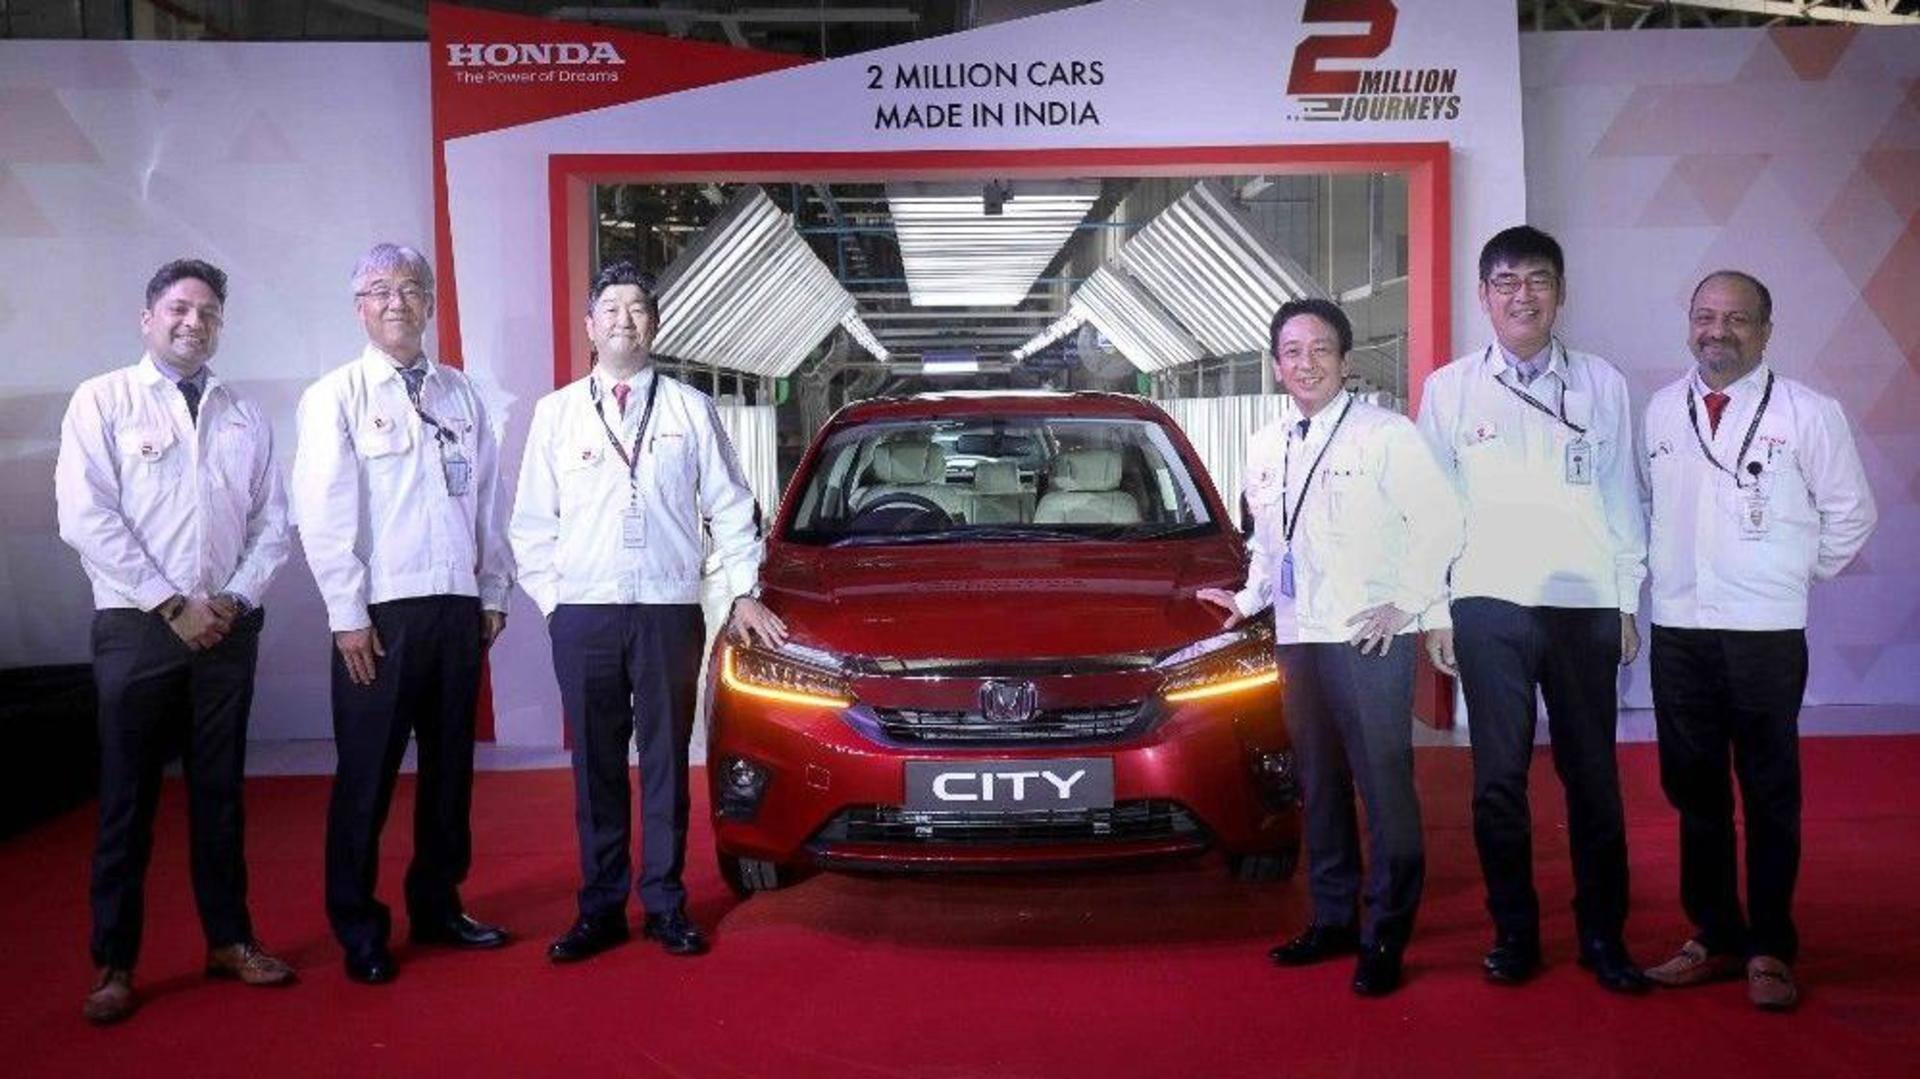 Honda Cars India reaches 20 lakh units production milestone